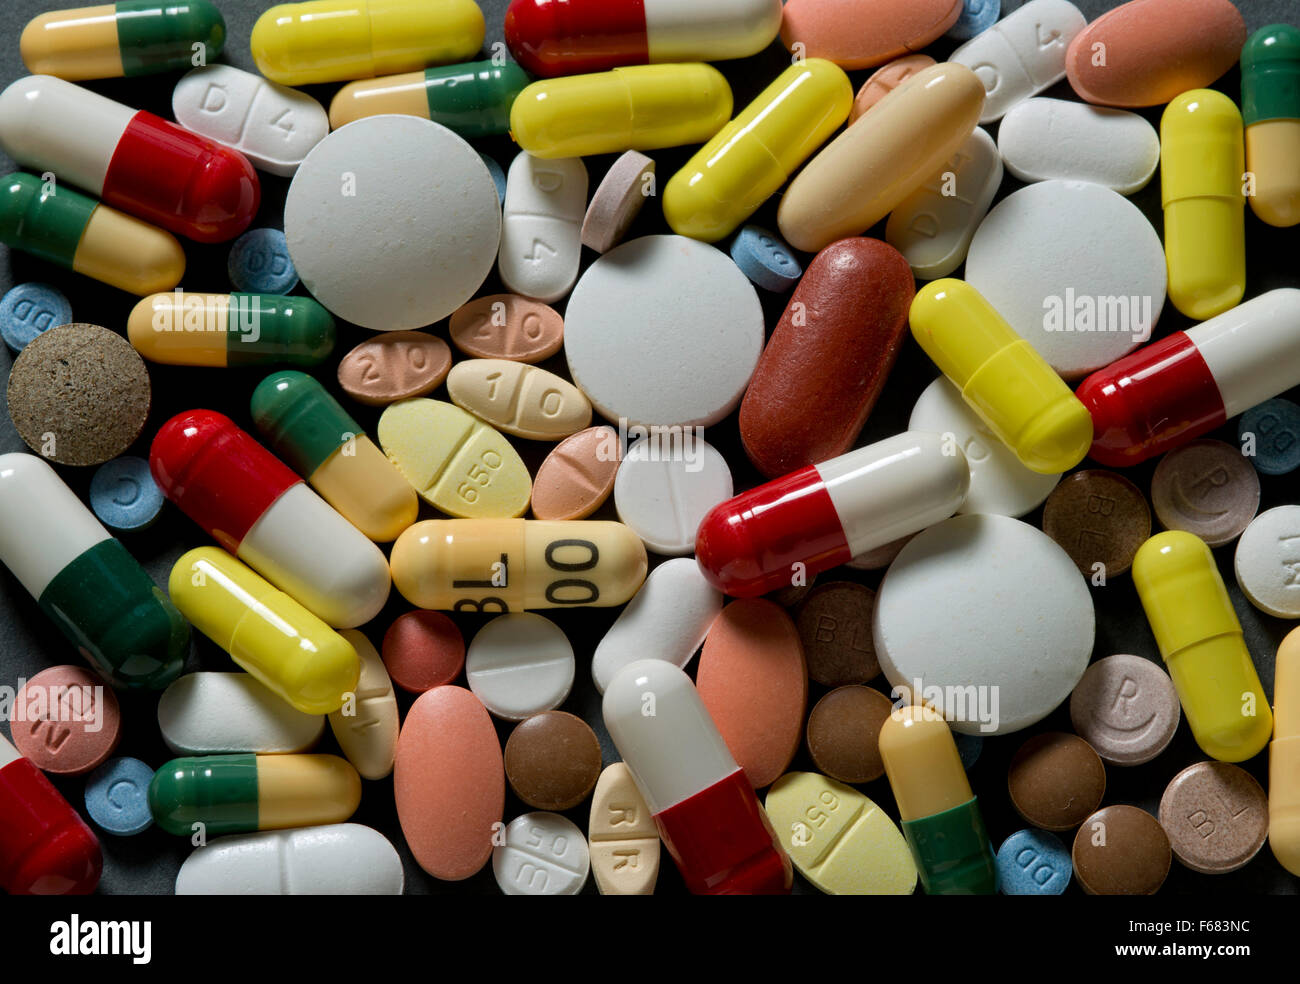 Una selección de medicamentos, tabletas y cápsulas.uk sport atletismo Juegos Olímpicos Rusia cheat engañando droga médica el dopaje wada iaaf Foto de stock